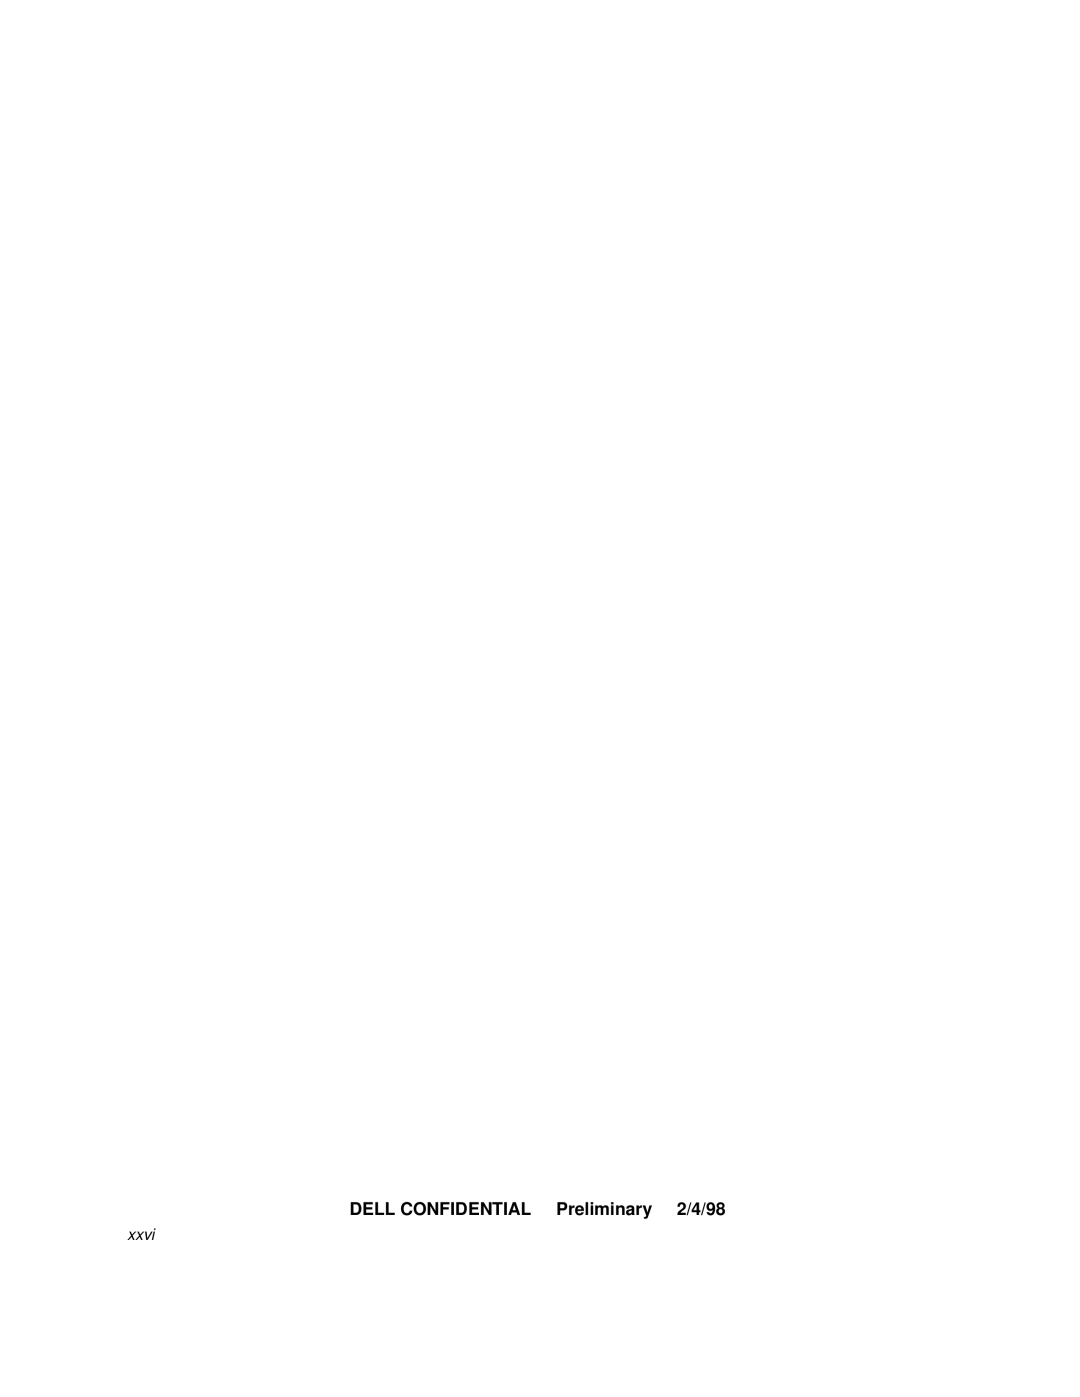 Dell 3000 manual DELL CONFIDENTIAL Preliminary 2/4/98, xxvi 